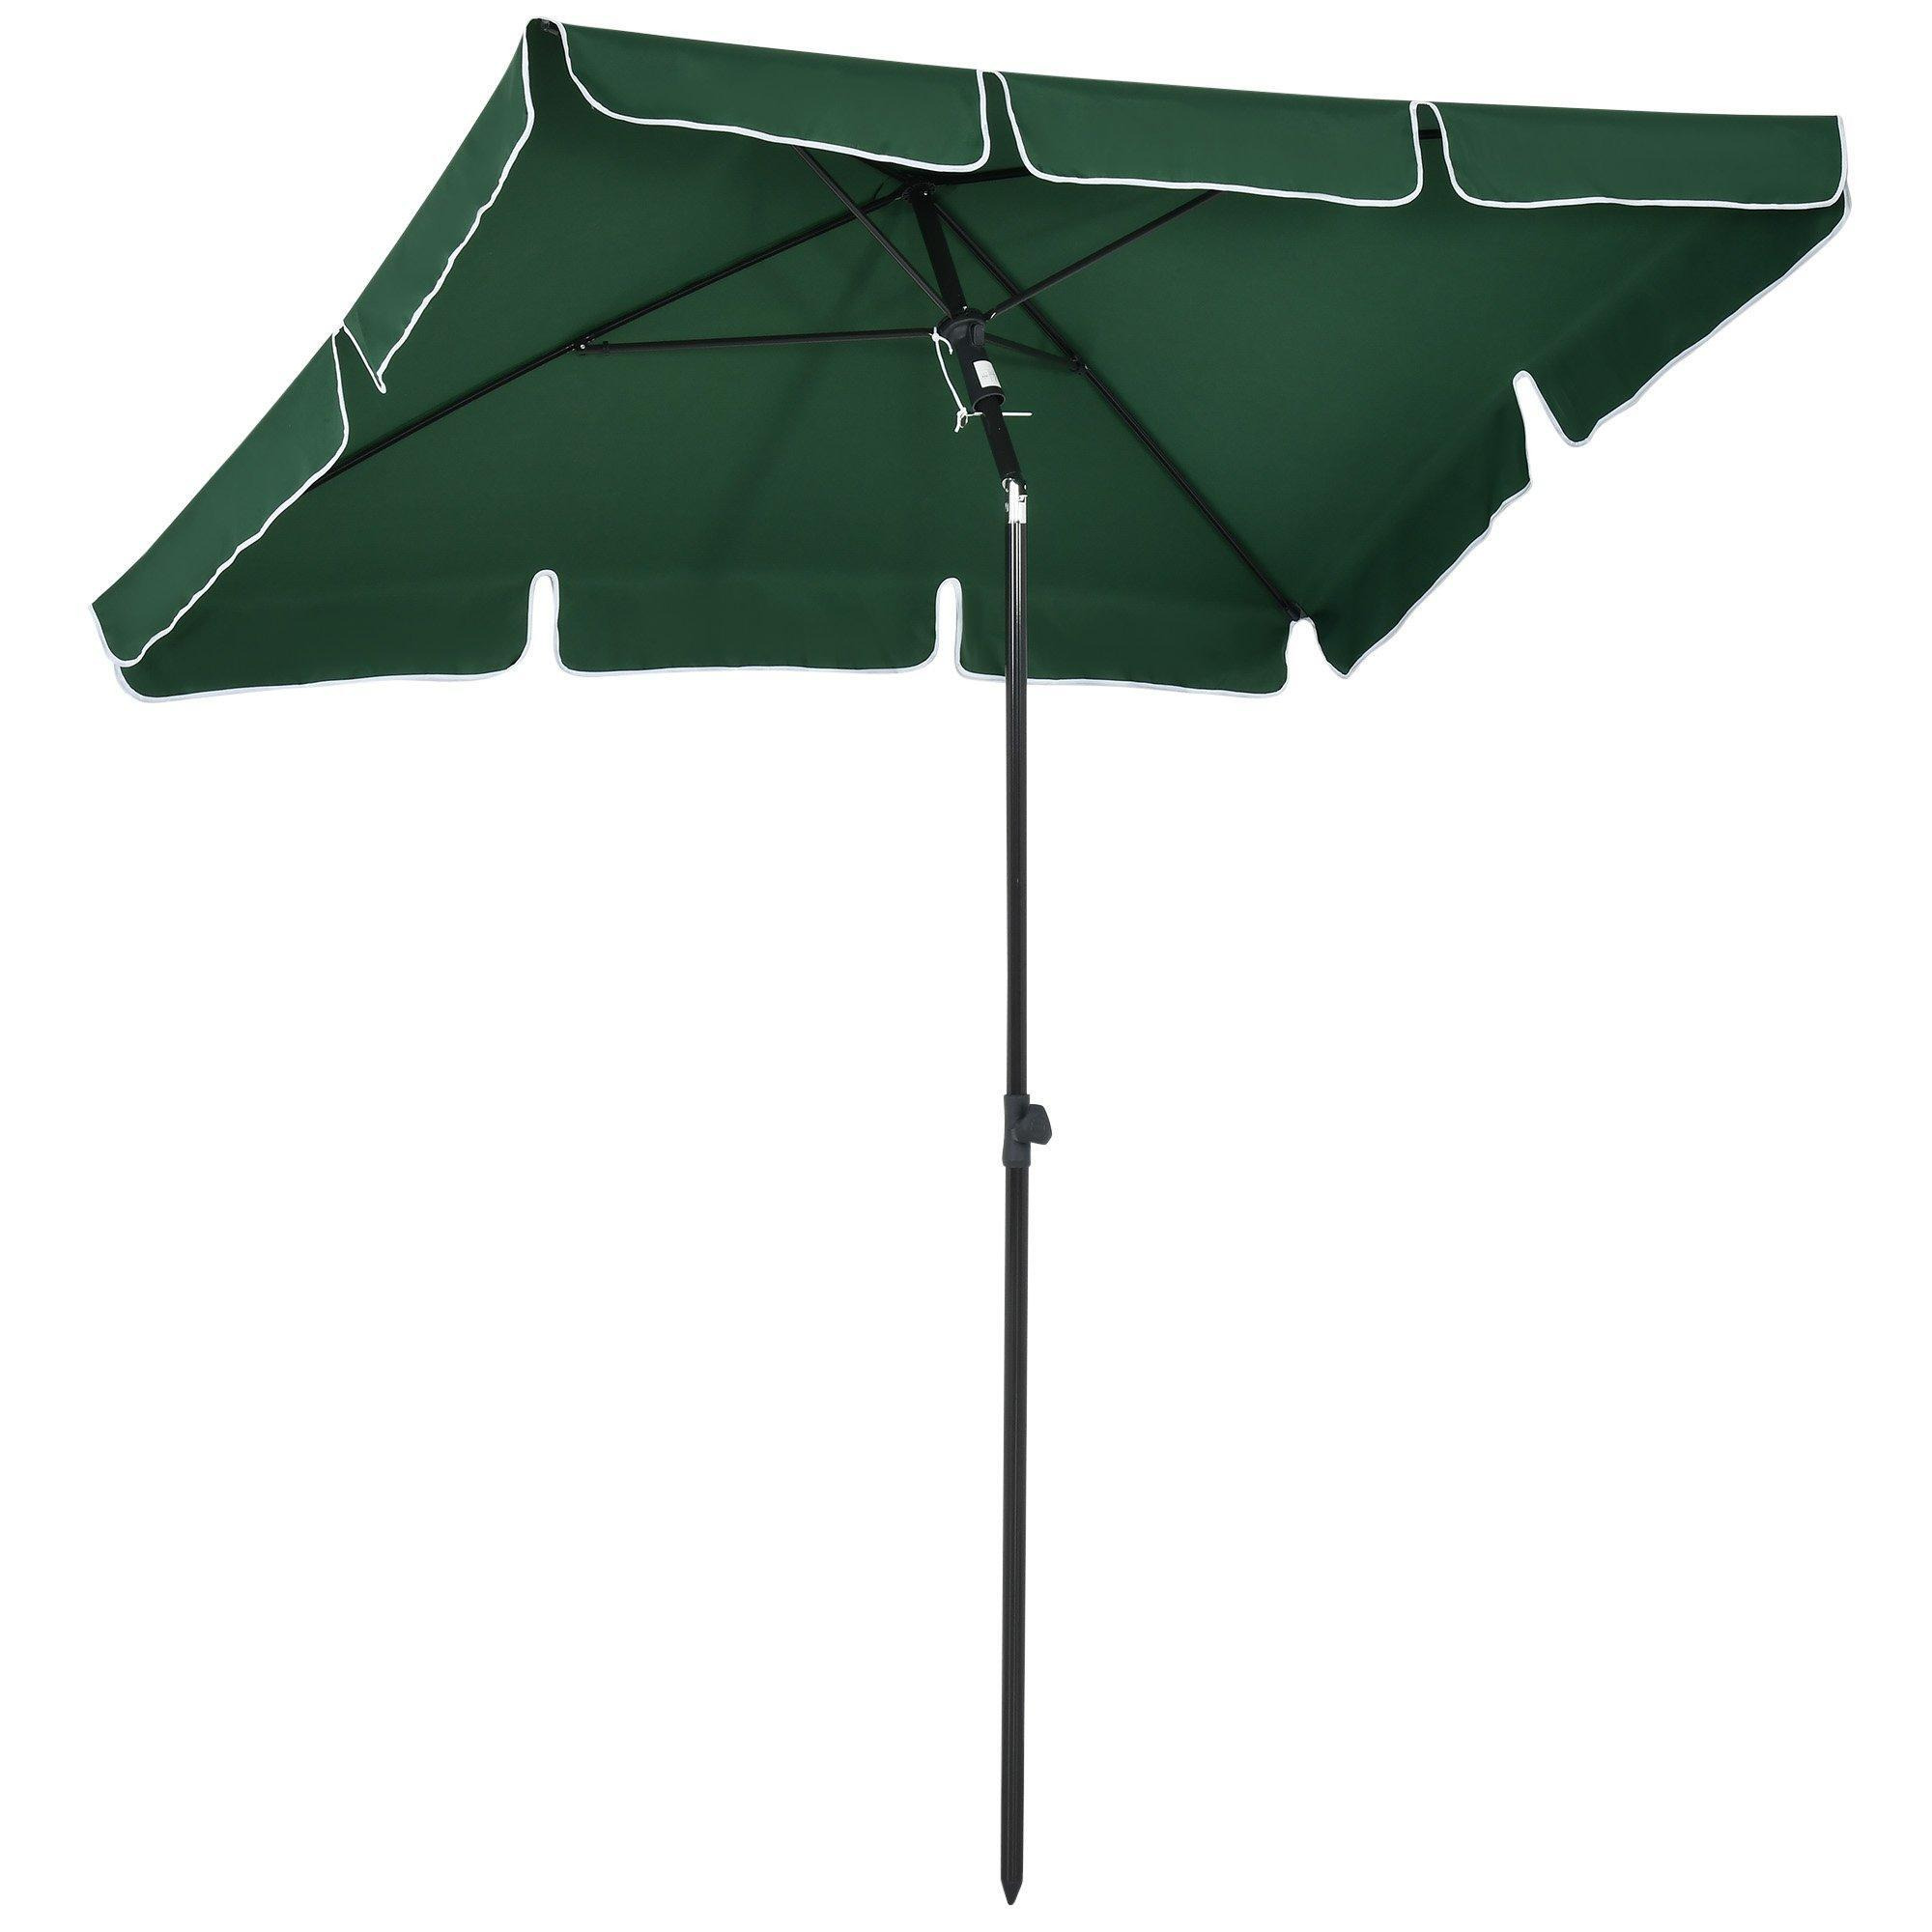 Aluminium Sun Umbrella Parasol Patio Rectangular 2M x 1.3M - image 1